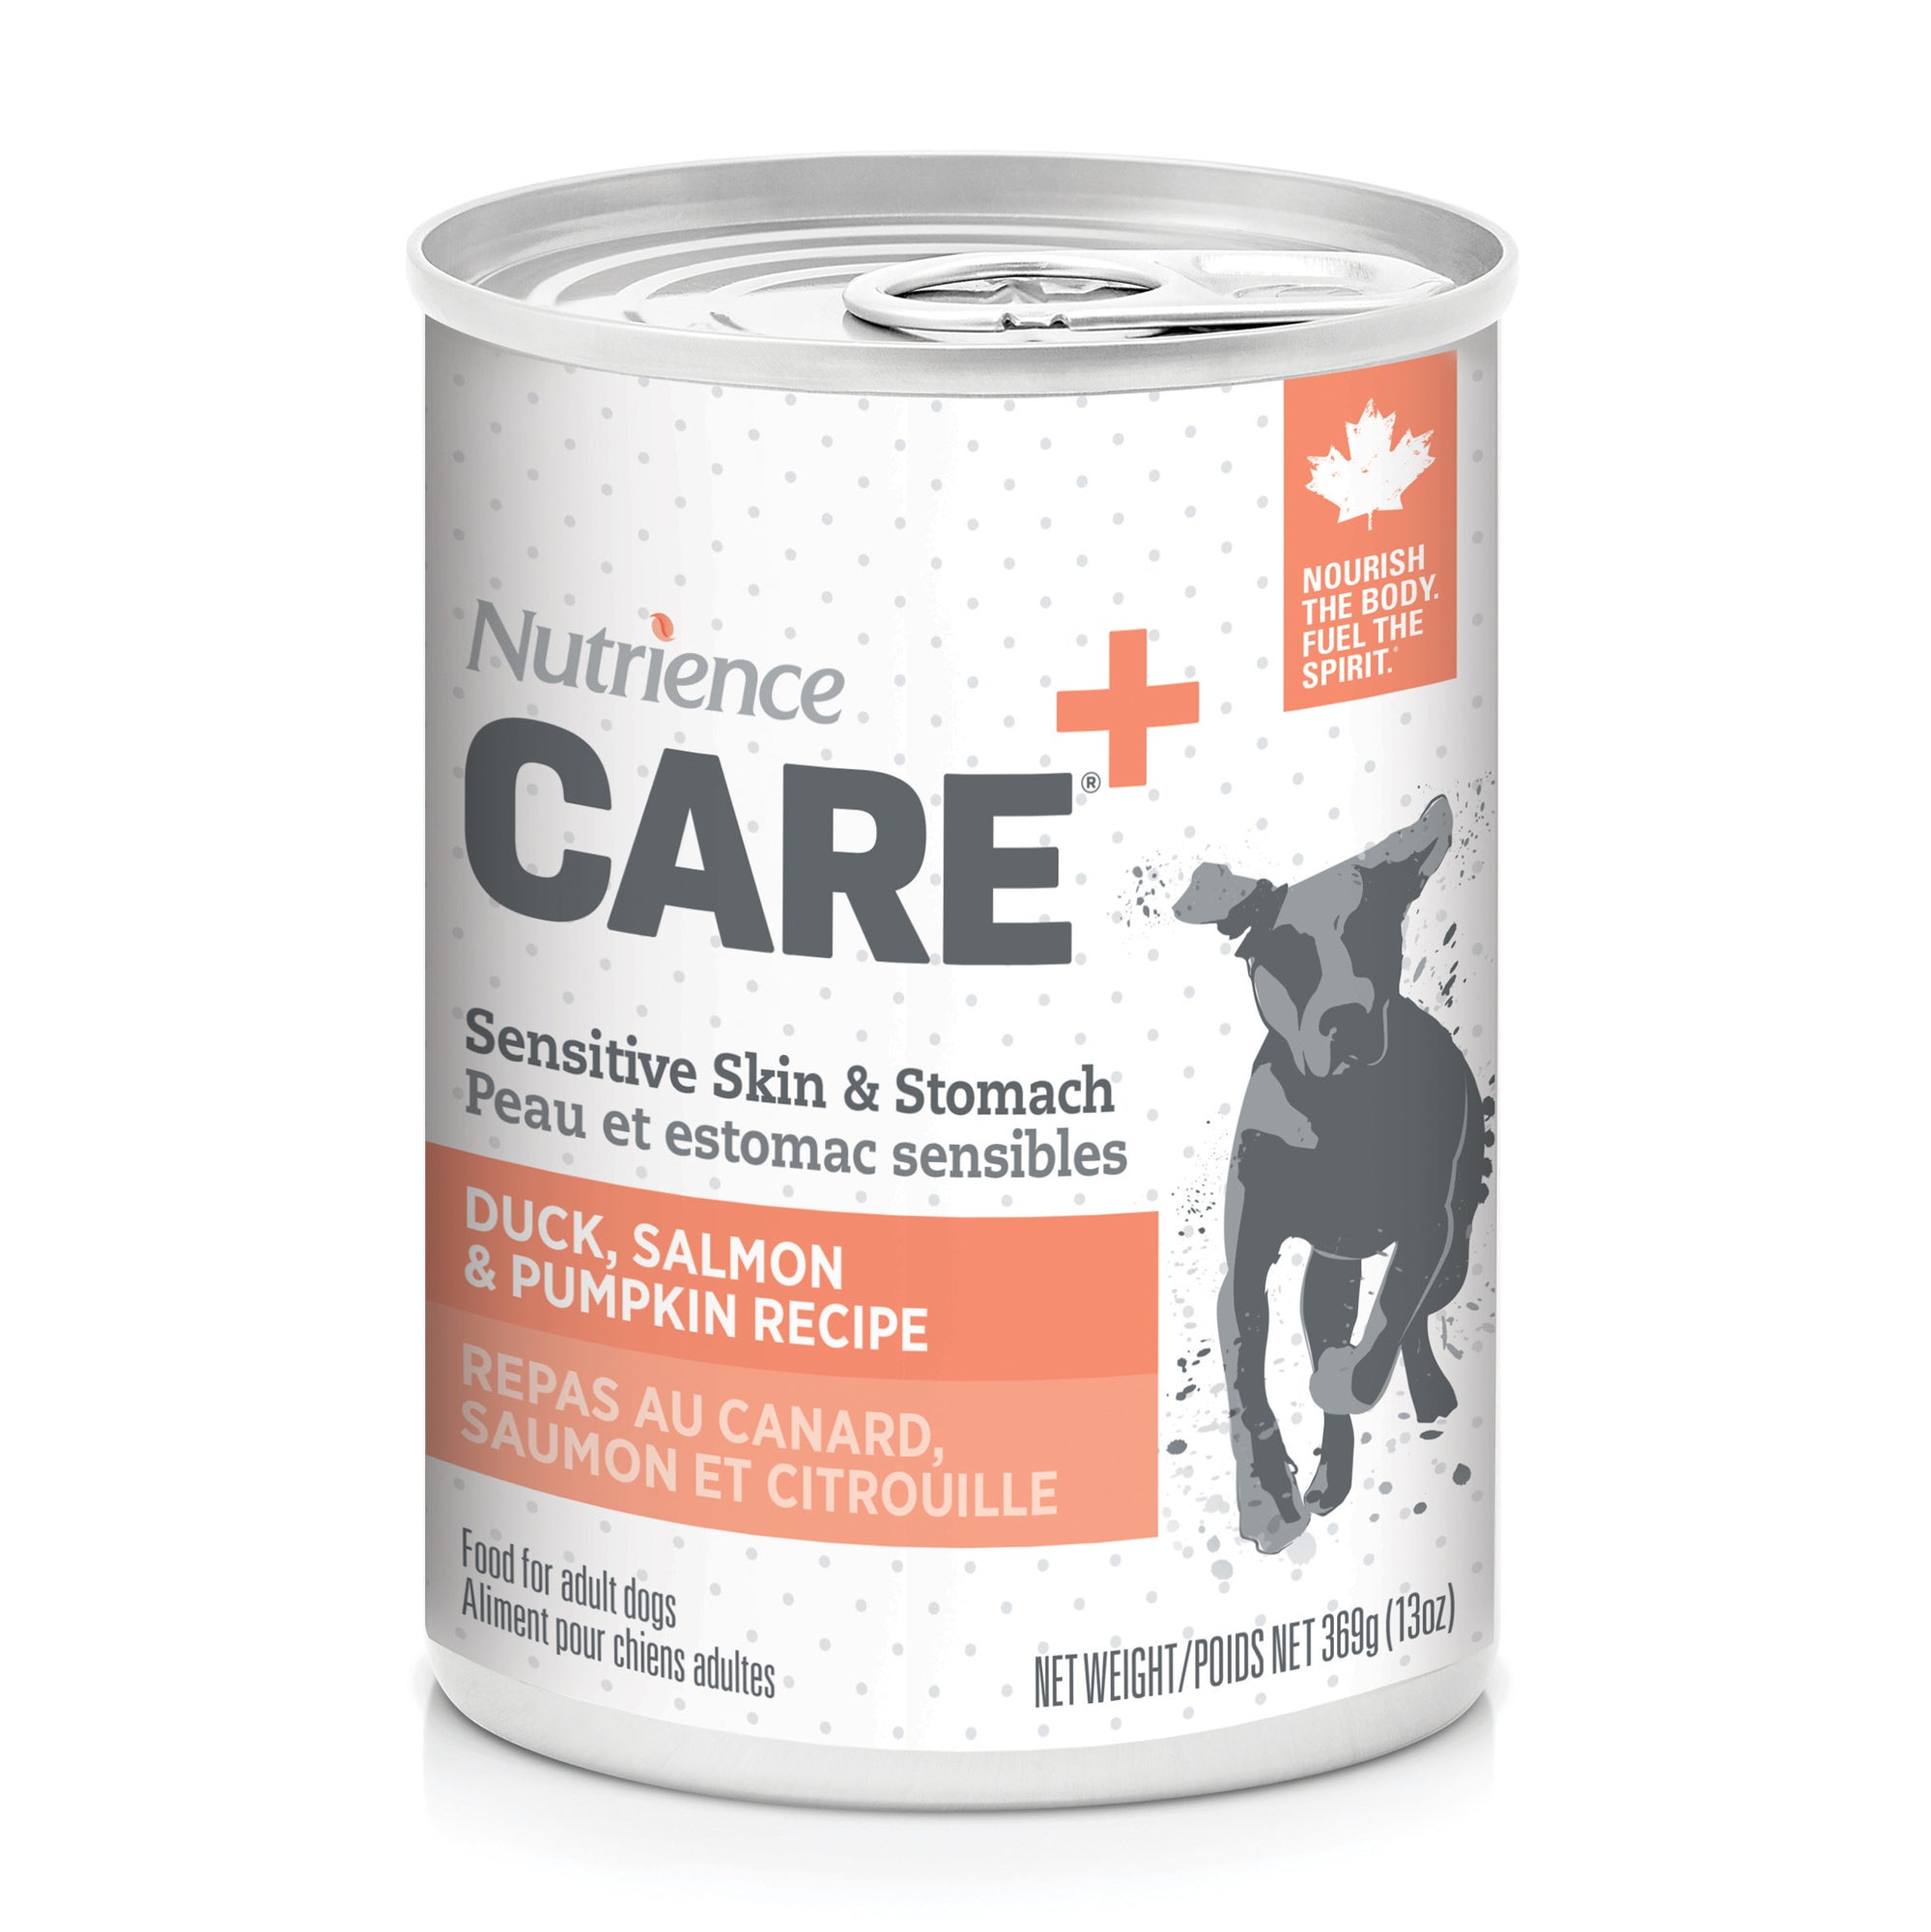 Pâté Nutrience Care Peau et estomac sensibles pour chiens, repas au canard, saumon et citrouille, 369 g (13 oz)